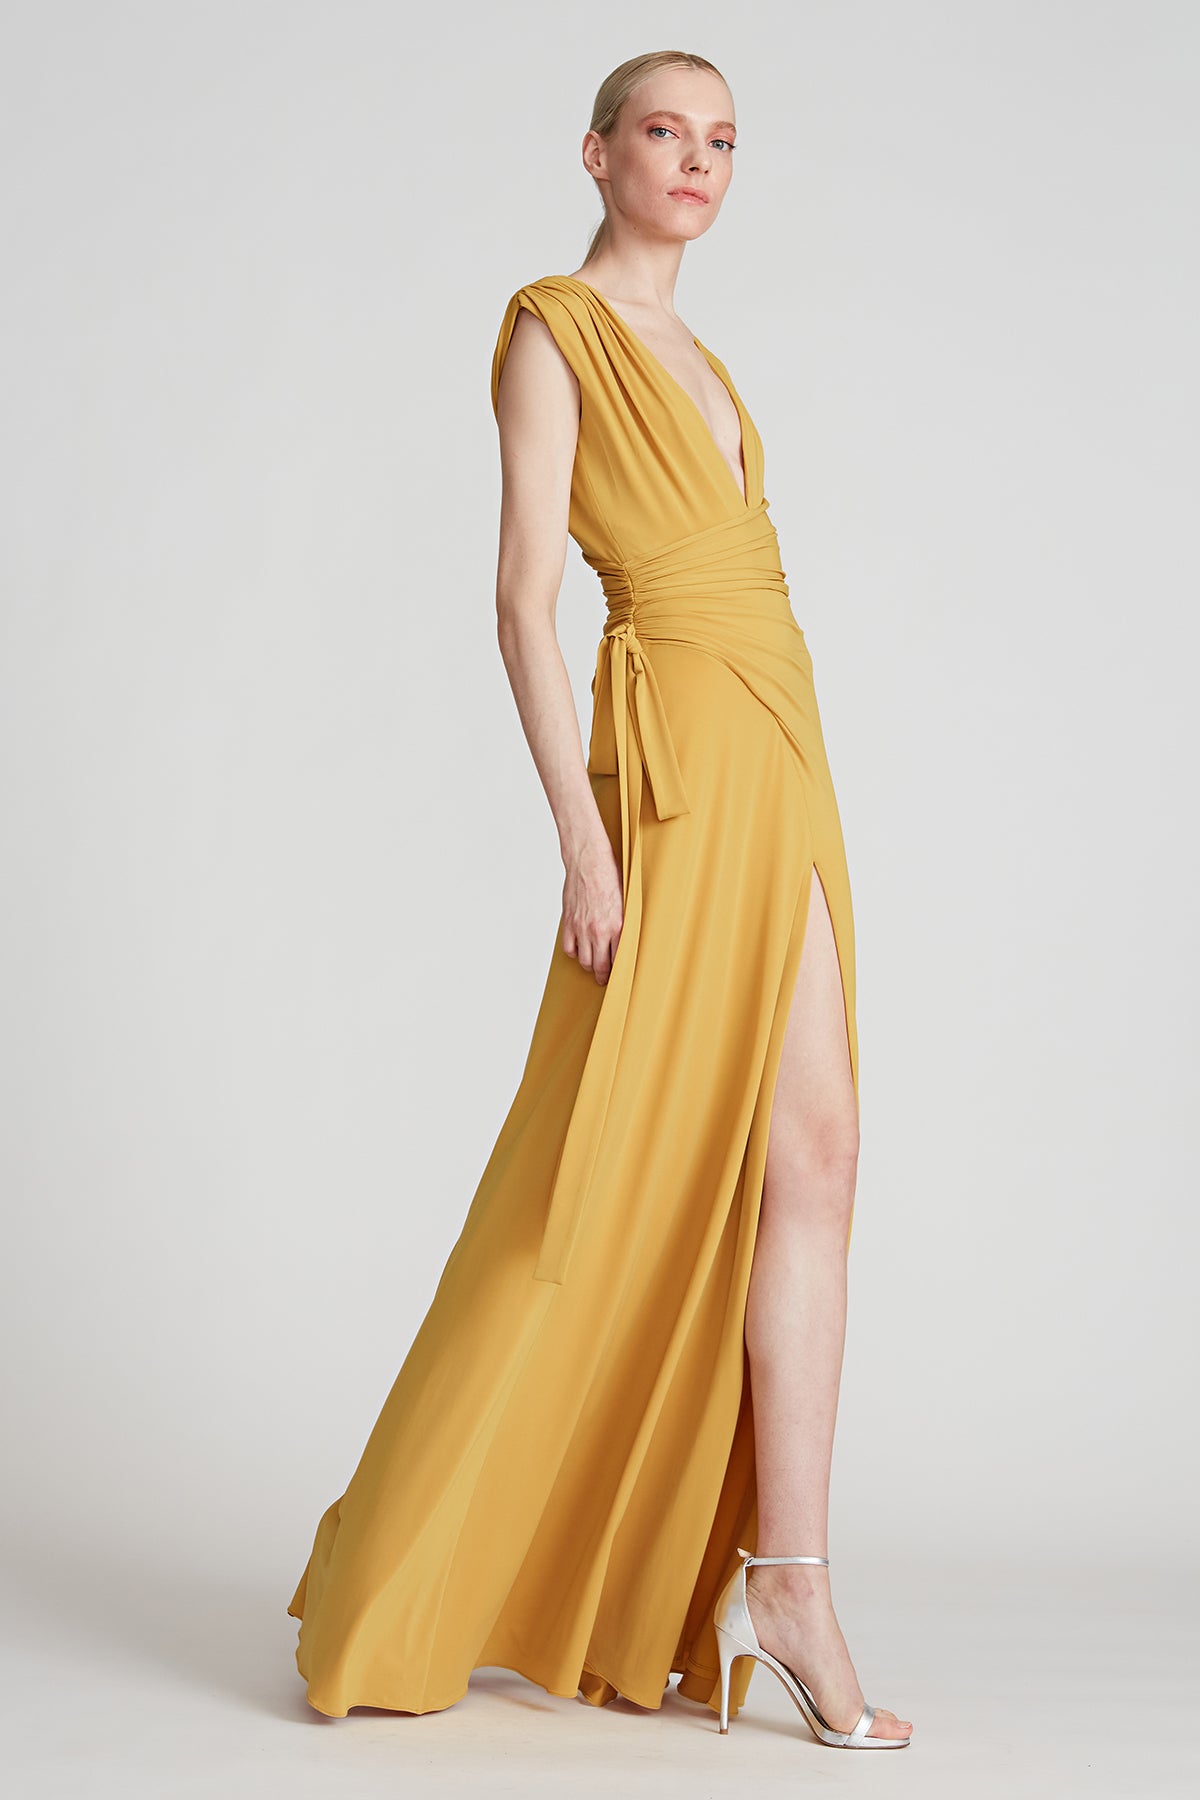 Halston - Arden Jersey Gown - Gold